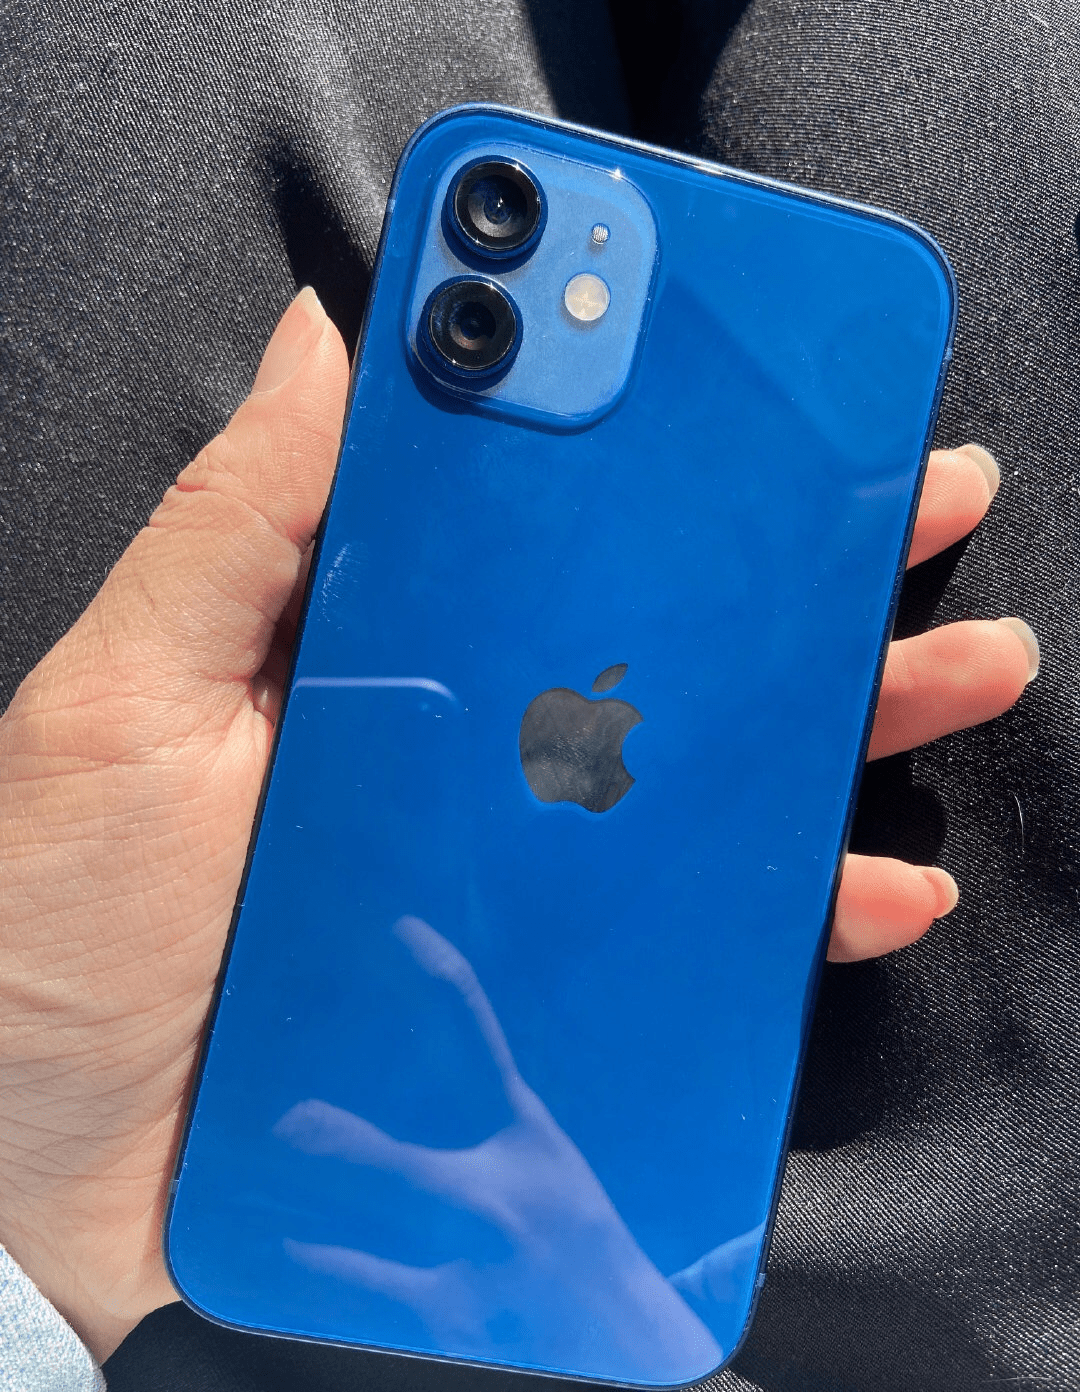 iphone12蓝色版首摔,背面裂个稀碎,摄像头都未能幸免